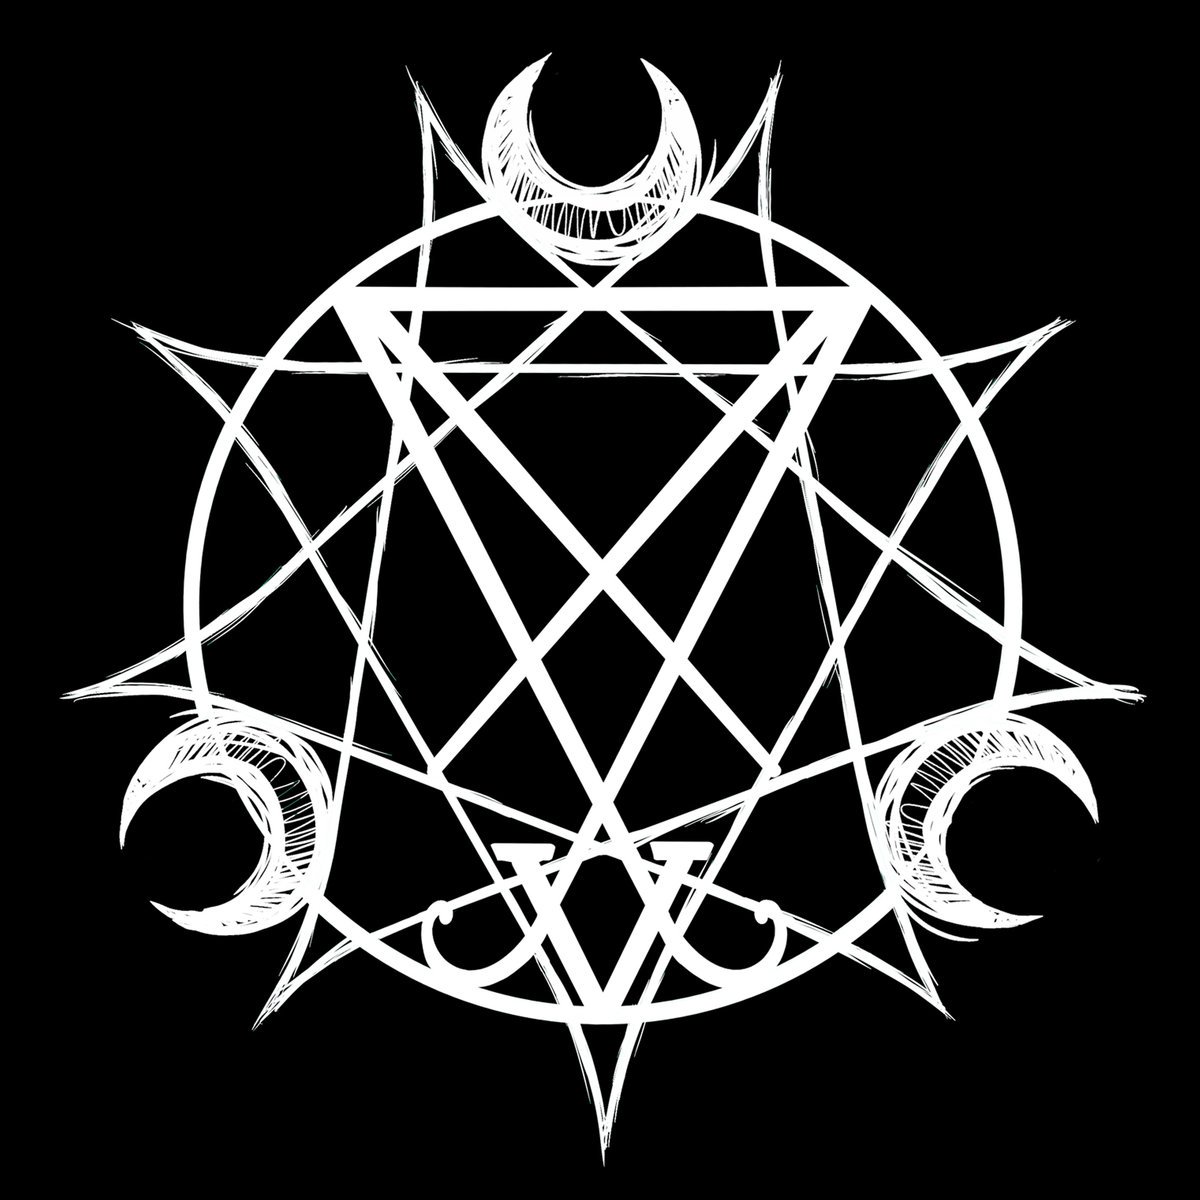 Прочитай о Unholy Trinity II - Of Serpents от Absinthius с альбома IX, посм...